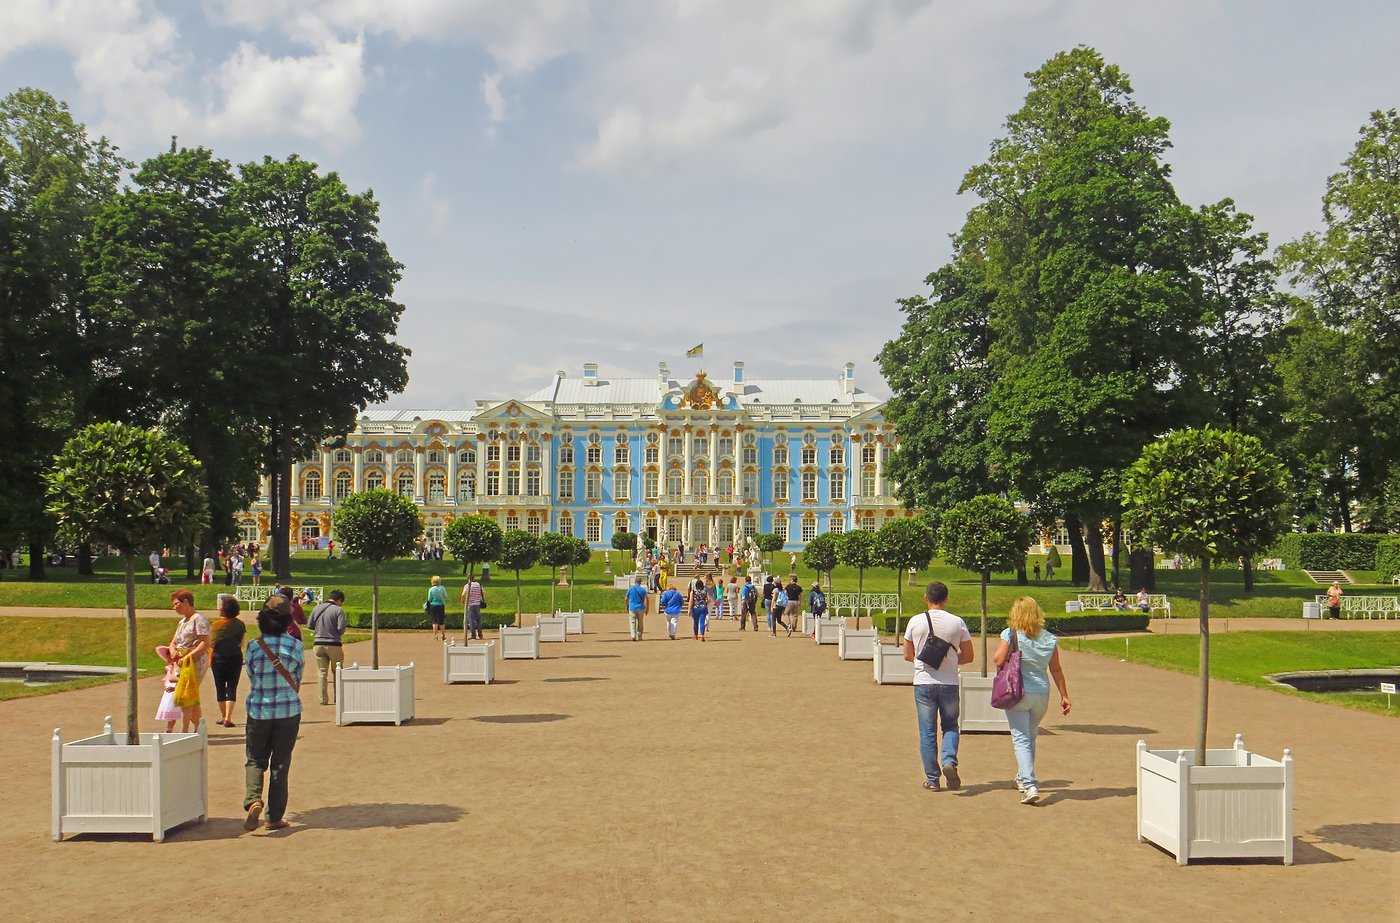 Екатерининский дворец - его залы и комнаты, россия, пушкин - галерея